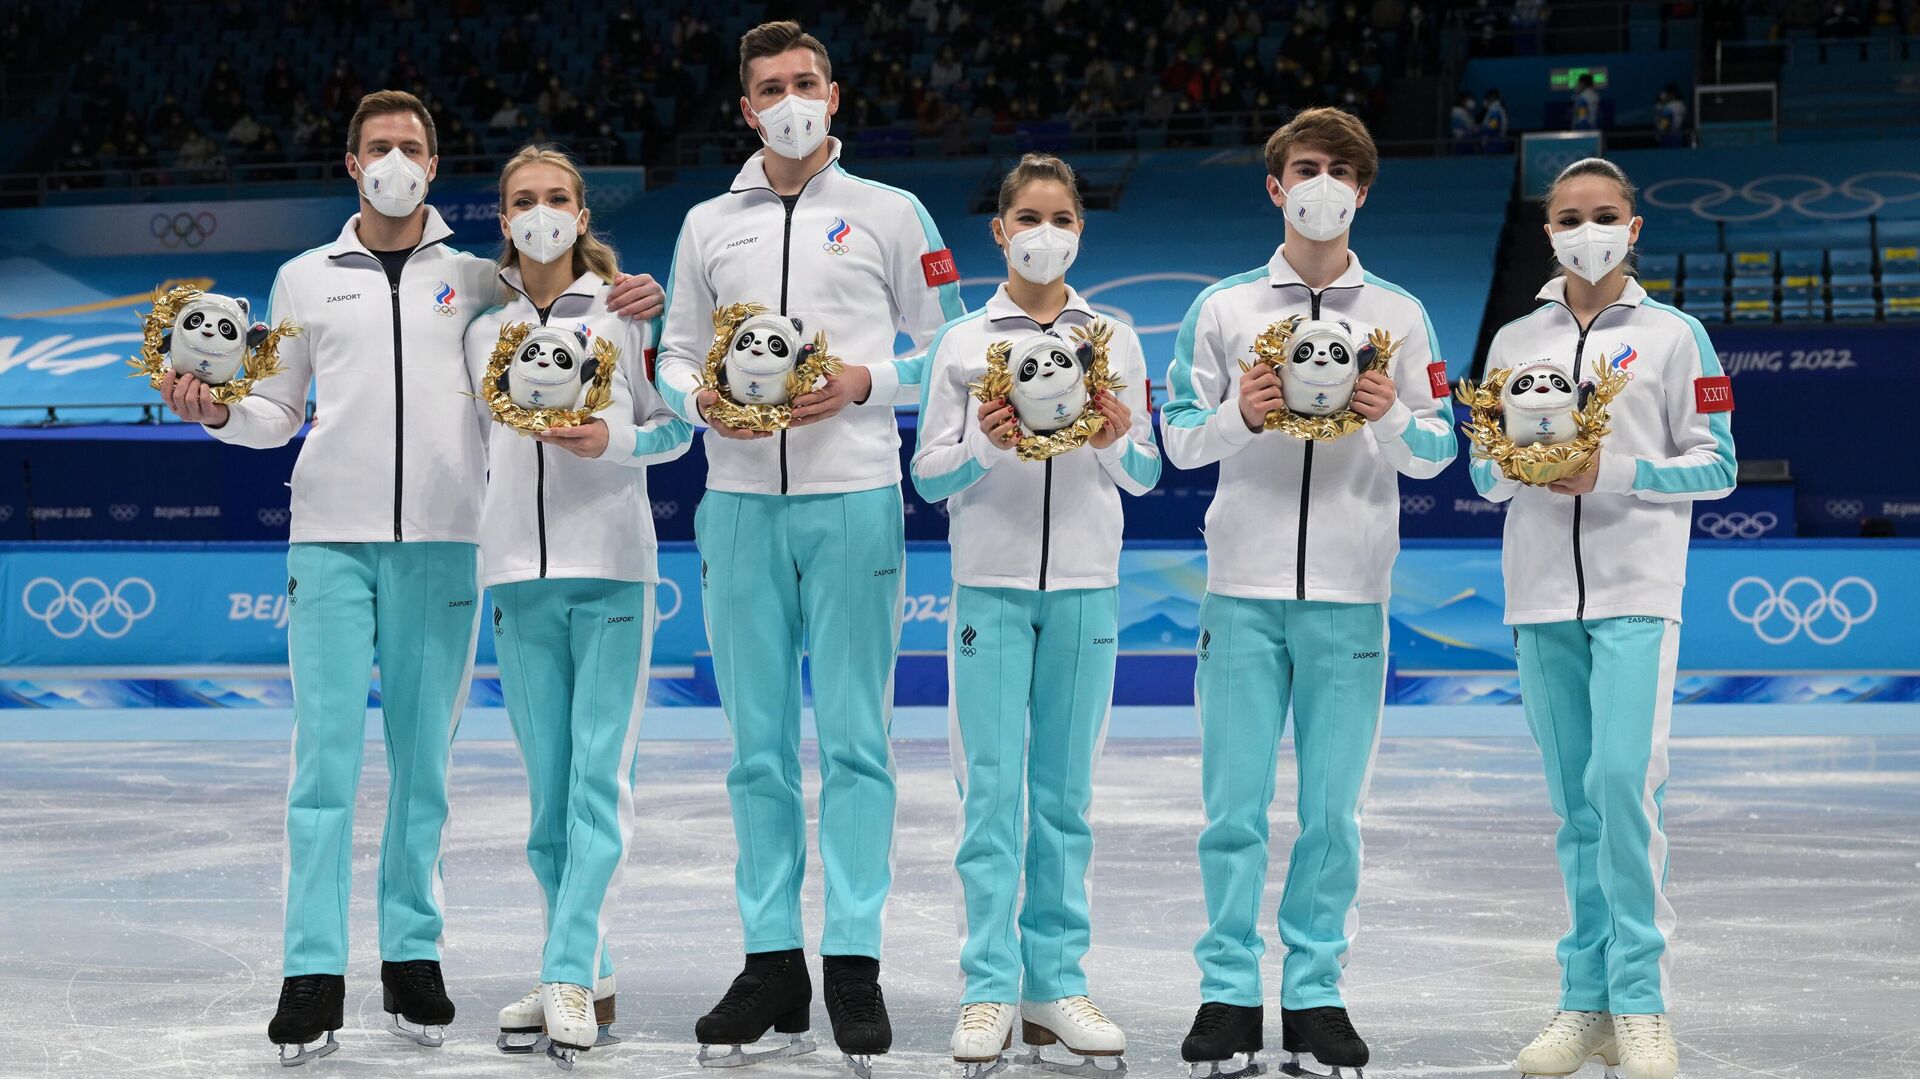 Rusijos dailiojo čiuožimo čiuožėjai apdovanojimais dailiojo čiuožimo komandinėse varžybose XXIV žiemos olimpinėse žaidynėse Pekine - Sputnik Lietuva, 1920, 14.02.2022